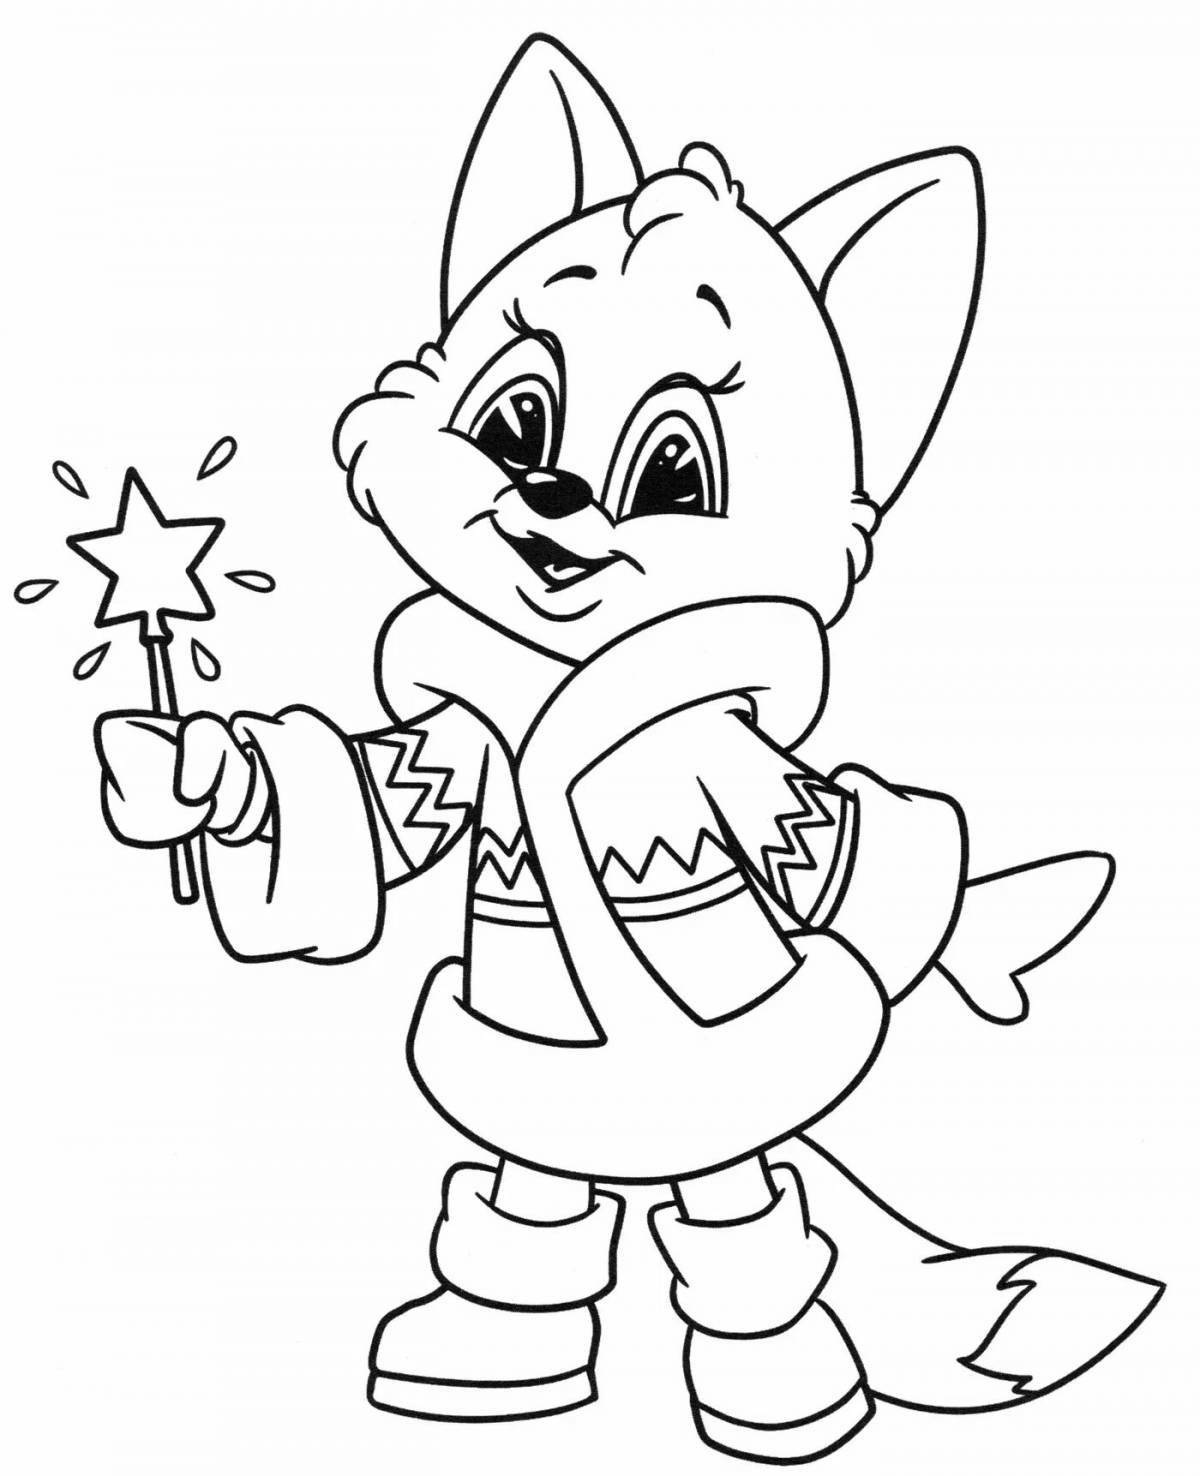 Happy coloring page fox для девочек